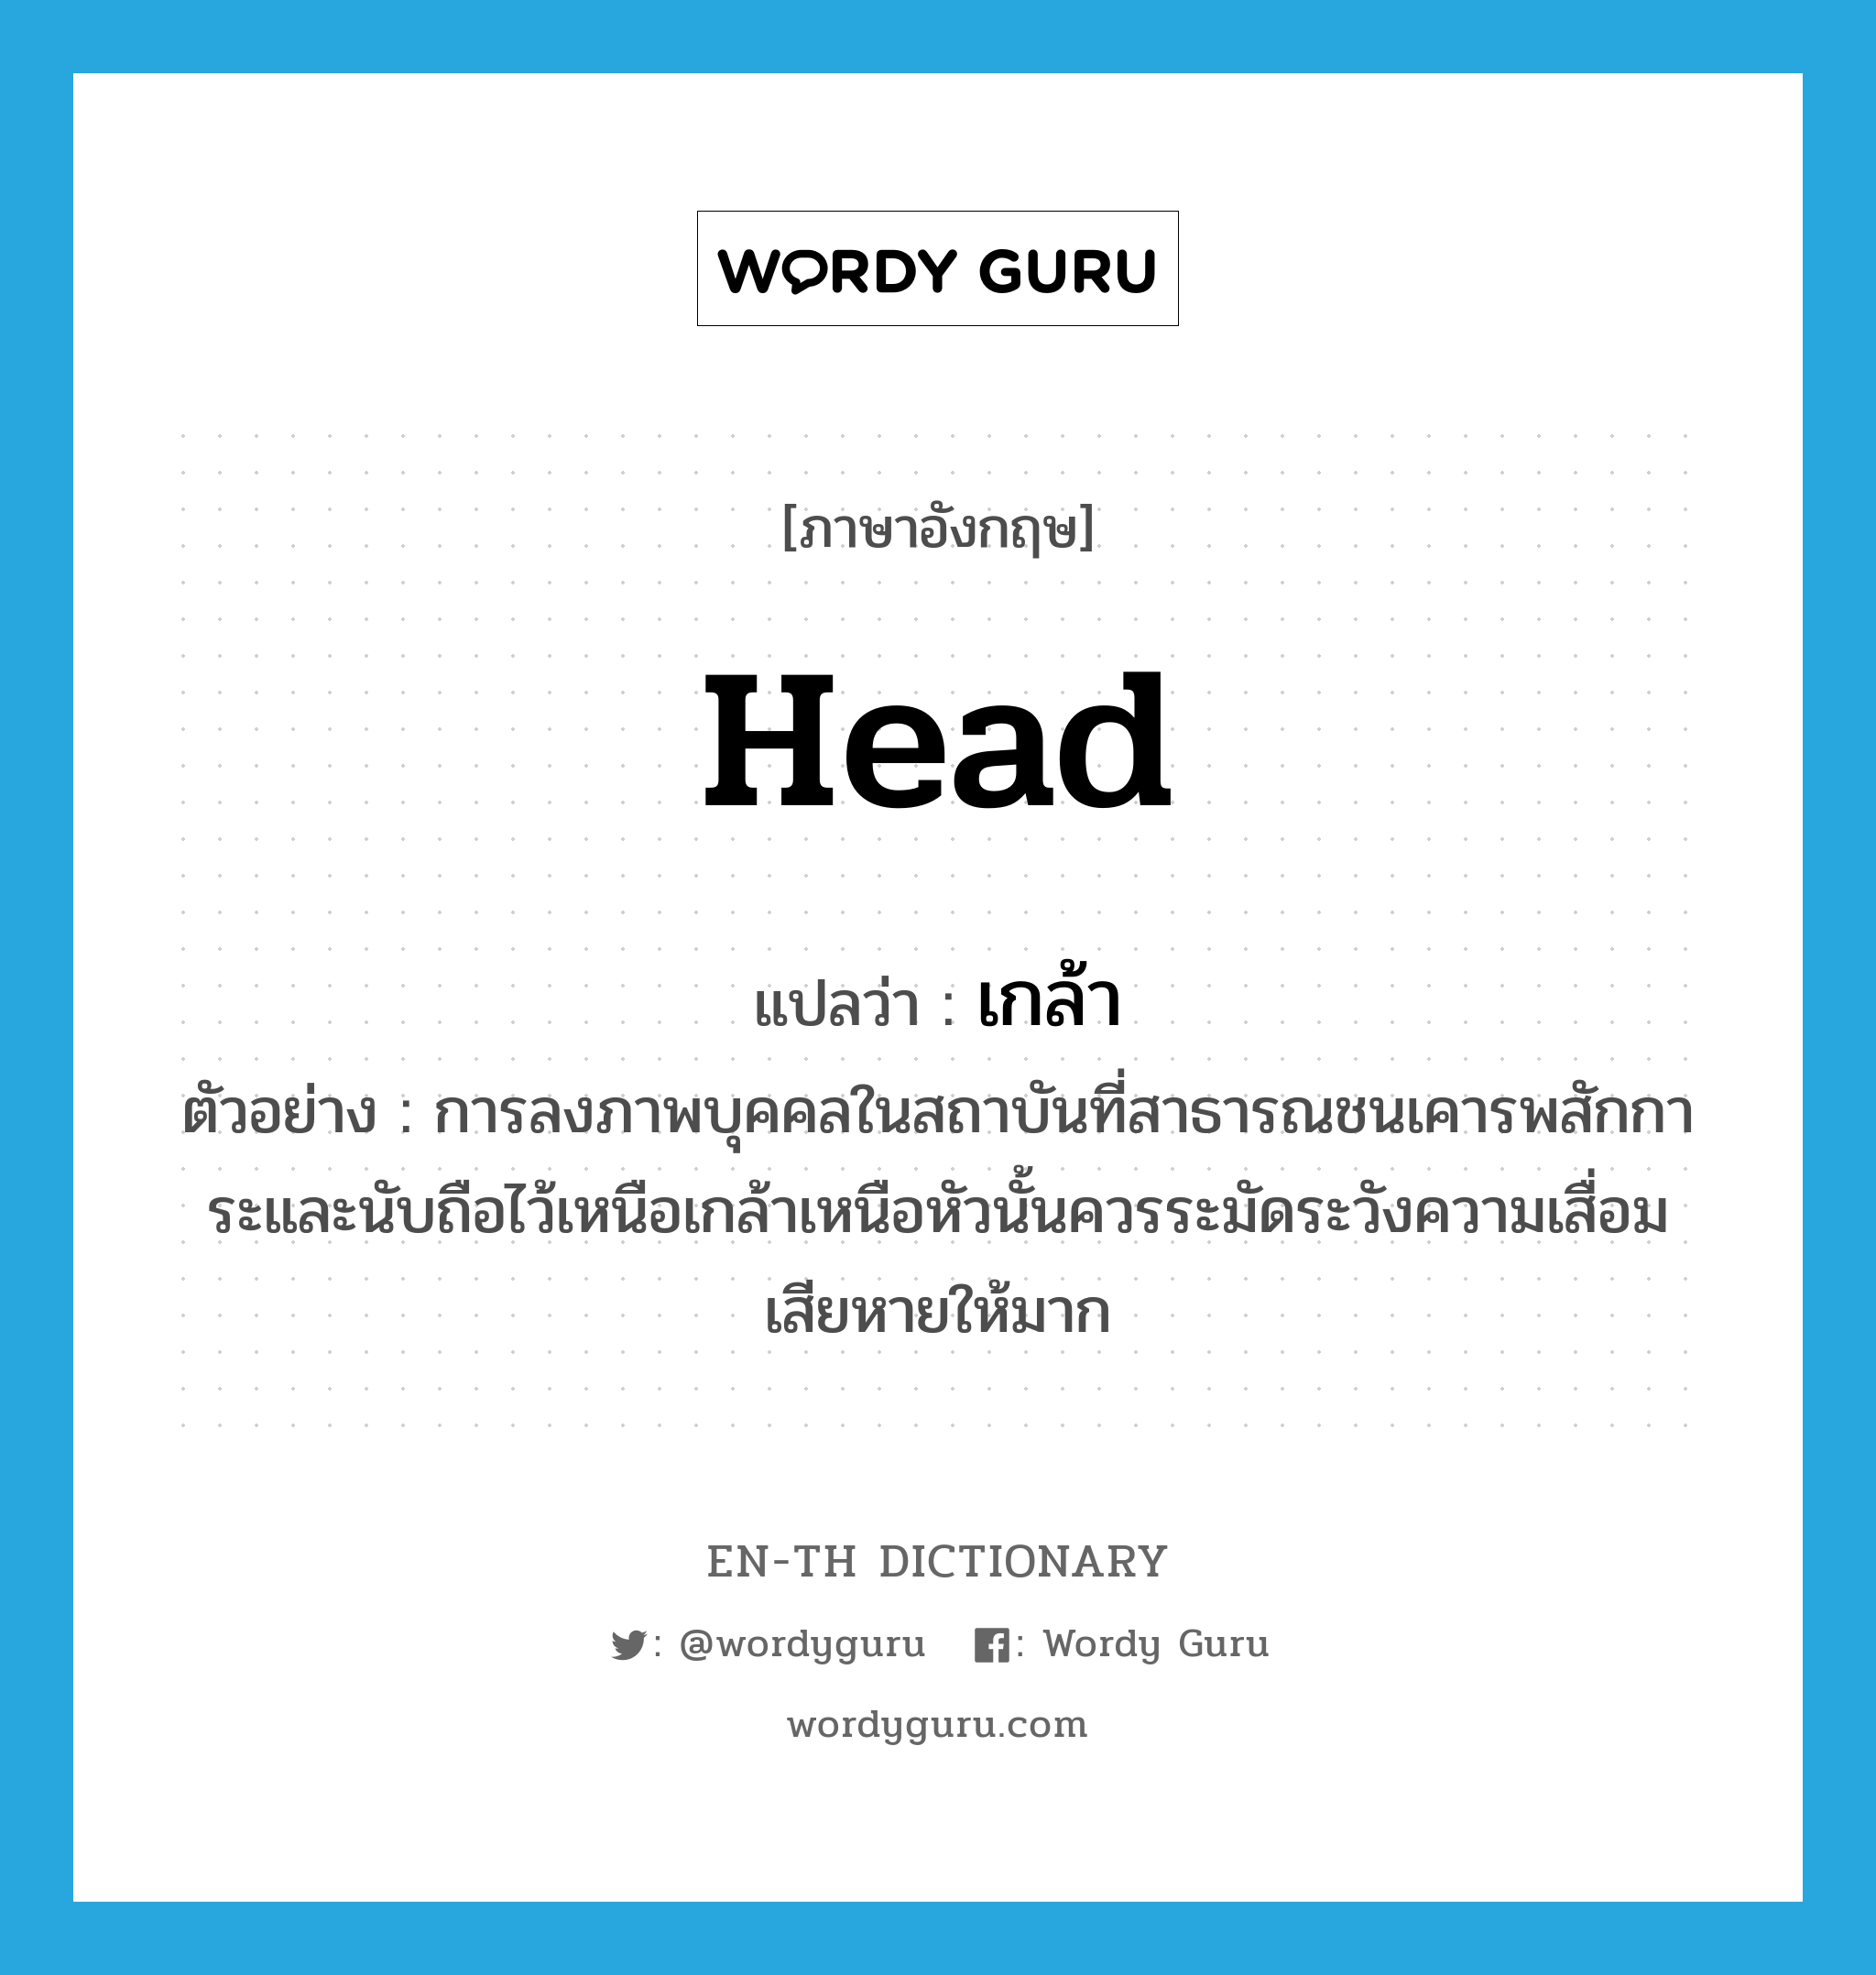 head แปลว่า?, คำศัพท์ภาษาอังกฤษ head แปลว่า เกล้า ประเภท N ตัวอย่าง การลงภาพบุคคลในสถาบันที่สาธารณชนเคารพสักการะและนับถือไว้เหนือเกล้าเหนือหัวนั้นควรระมัดระวังความเสื่อมเสียหายให้มาก หมวด N